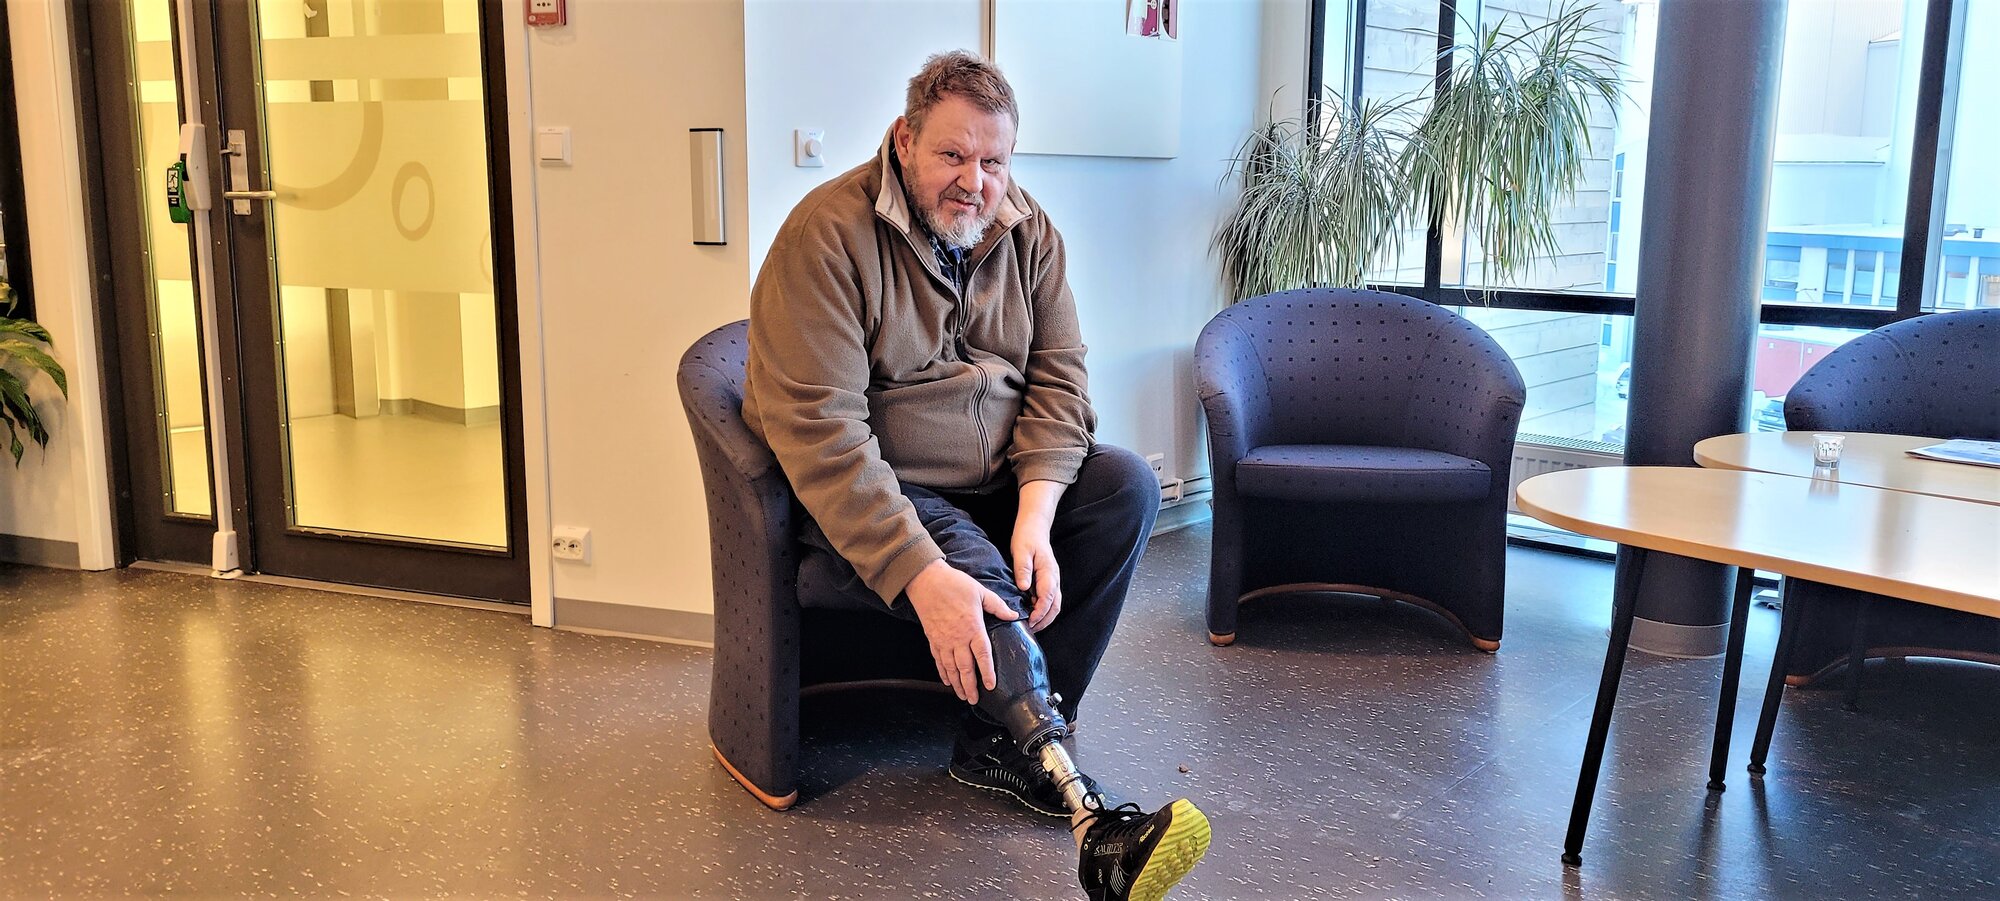 Kjell Løvik er glad for å ha fått amputert høyrebeinet